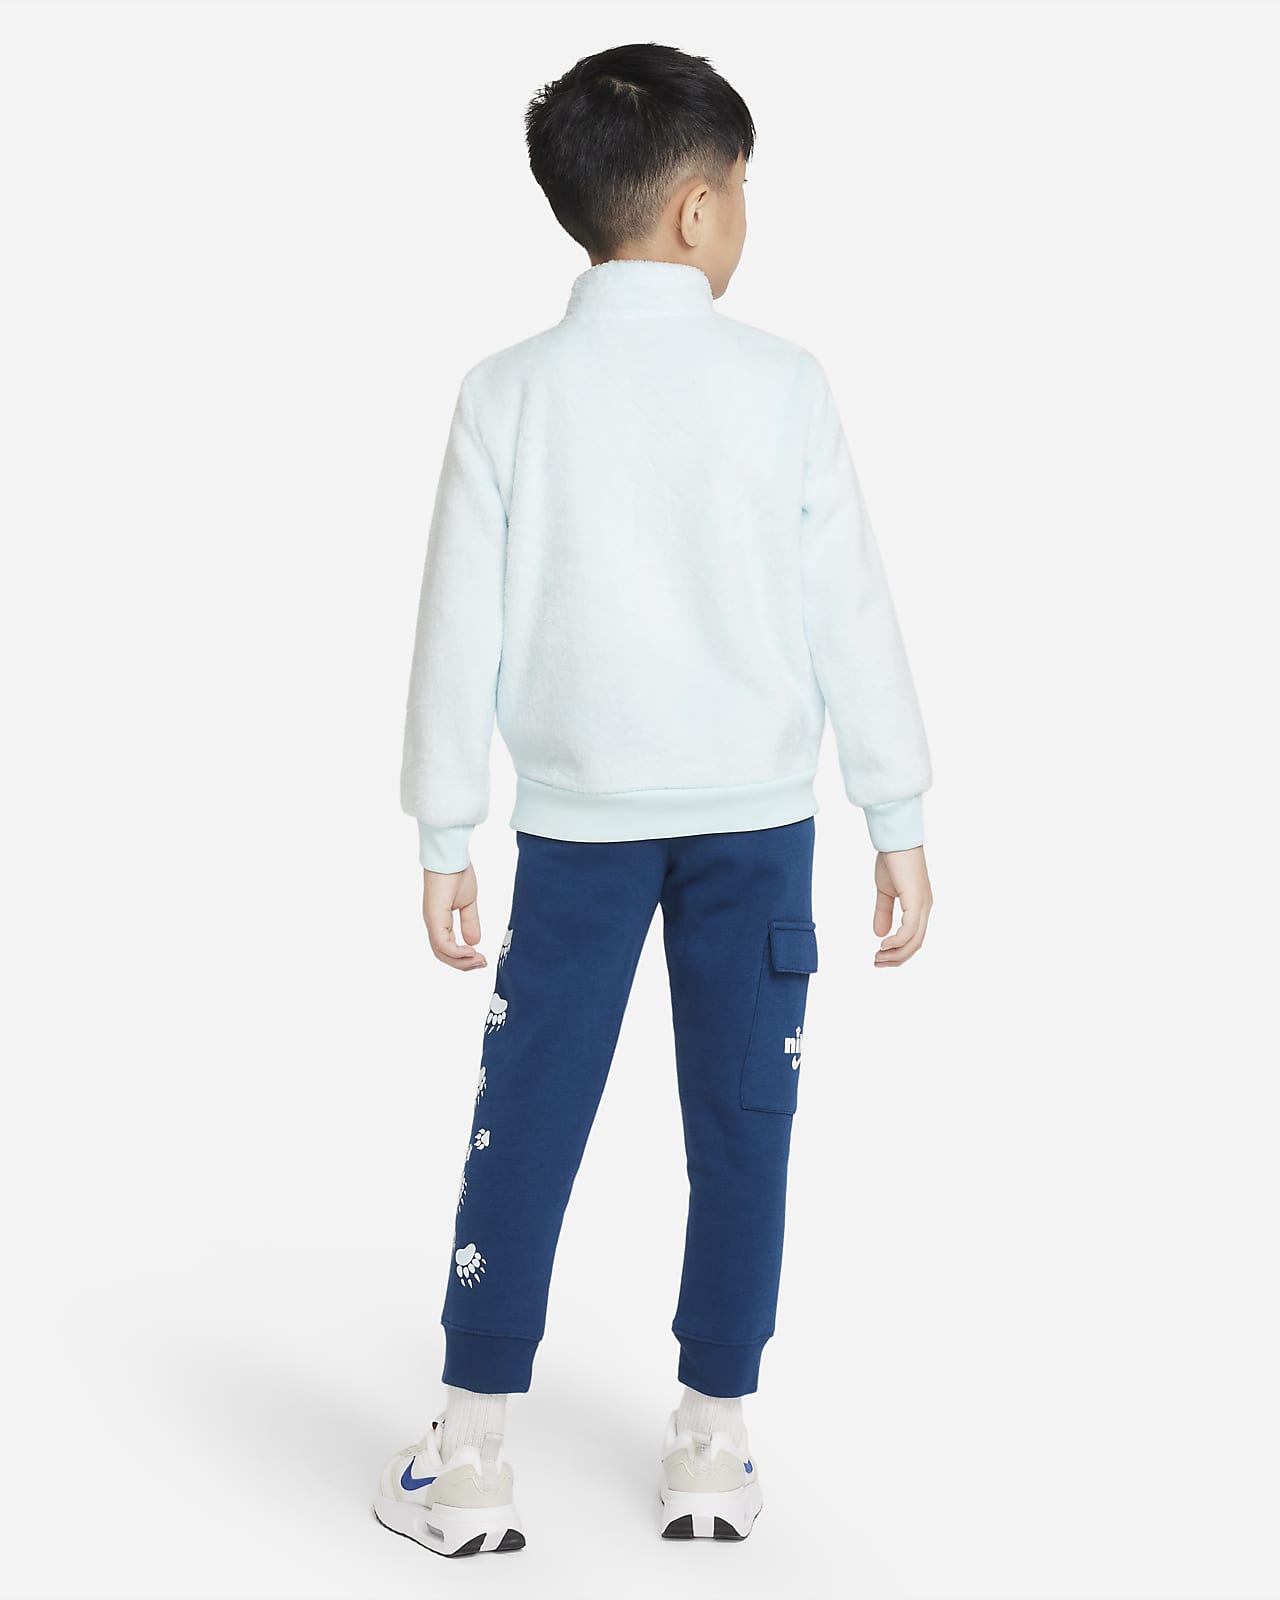 Nike Sportswear Tech Fleece Full-zip Set Younger Kids' 2-Piece Hoodie Set.  Nike LU